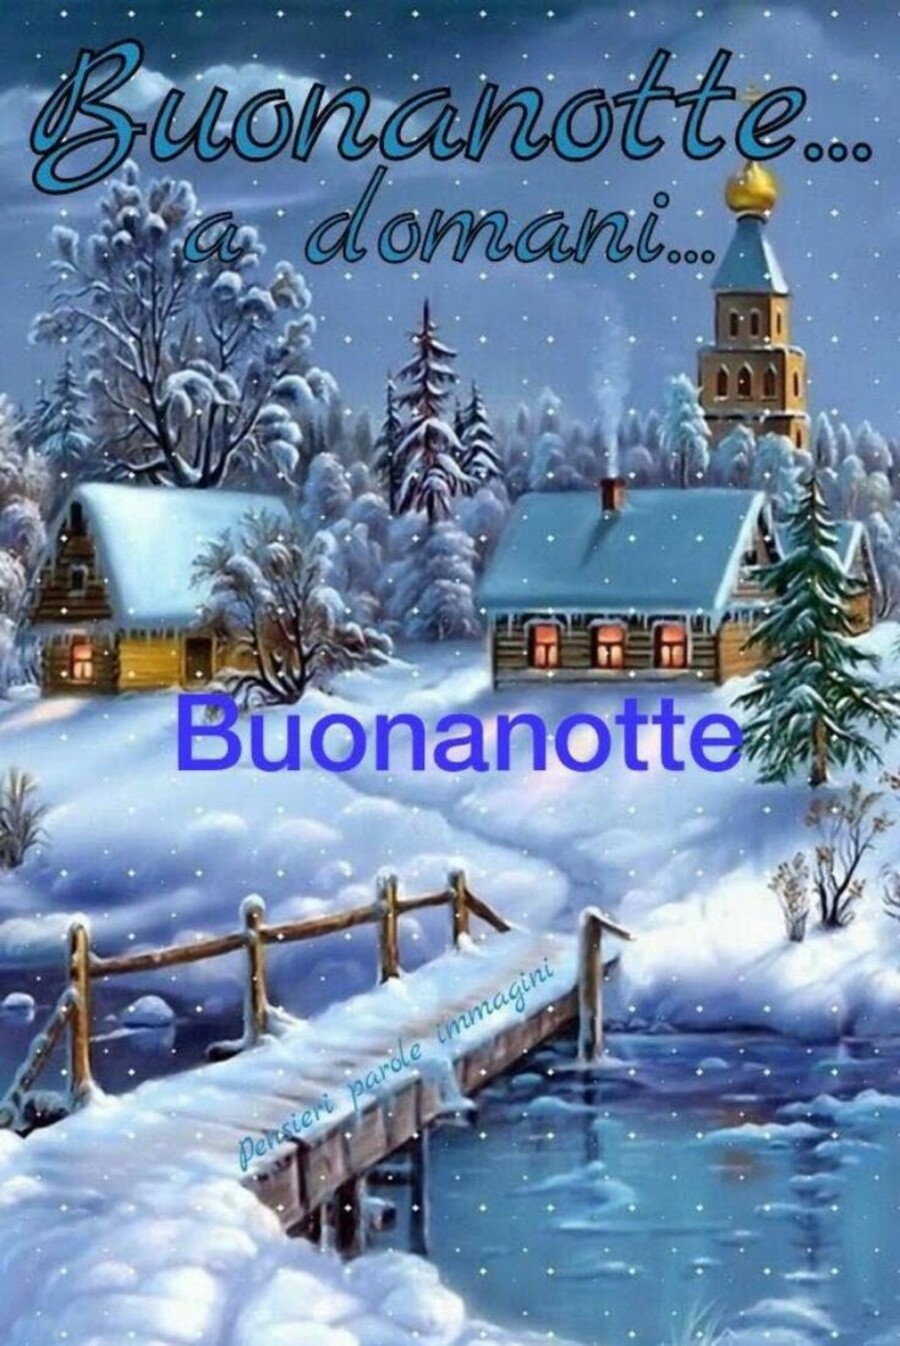 Buonanotte inverno immagini con frasi a tema - Bgiorno.it